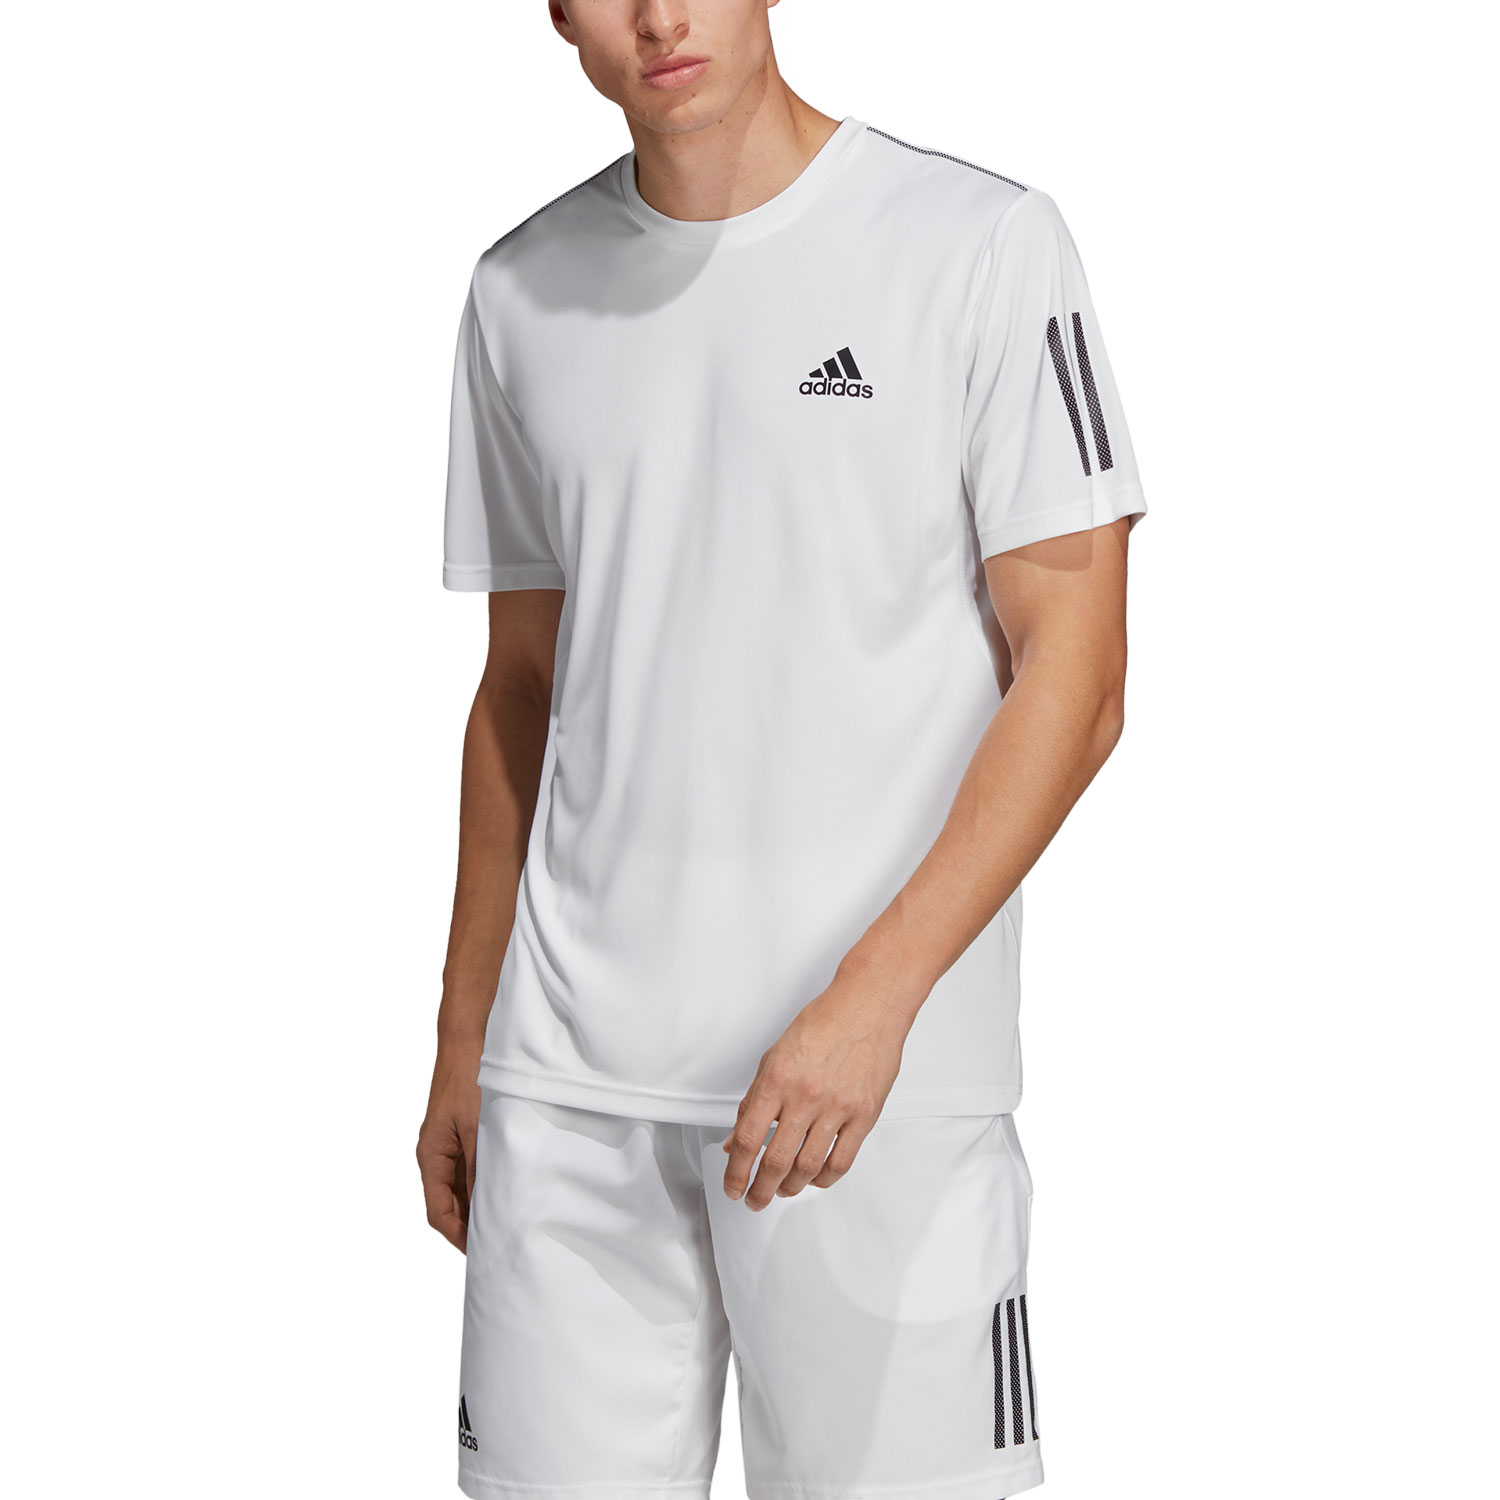 adidas Club 3 Stripes Camiseta Tenis Hombre - White/Black